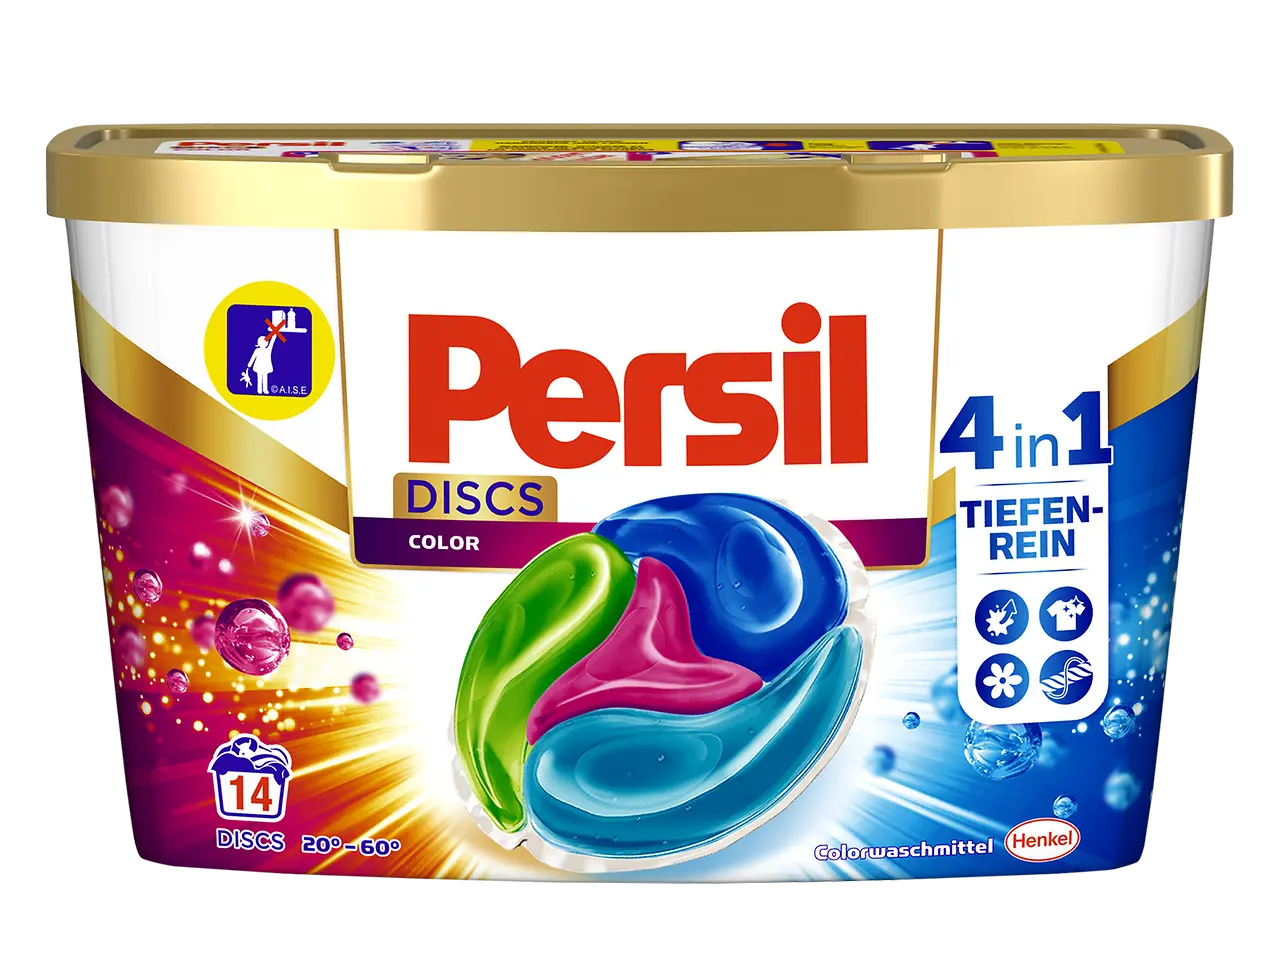 Die neuen Persil Discs Color